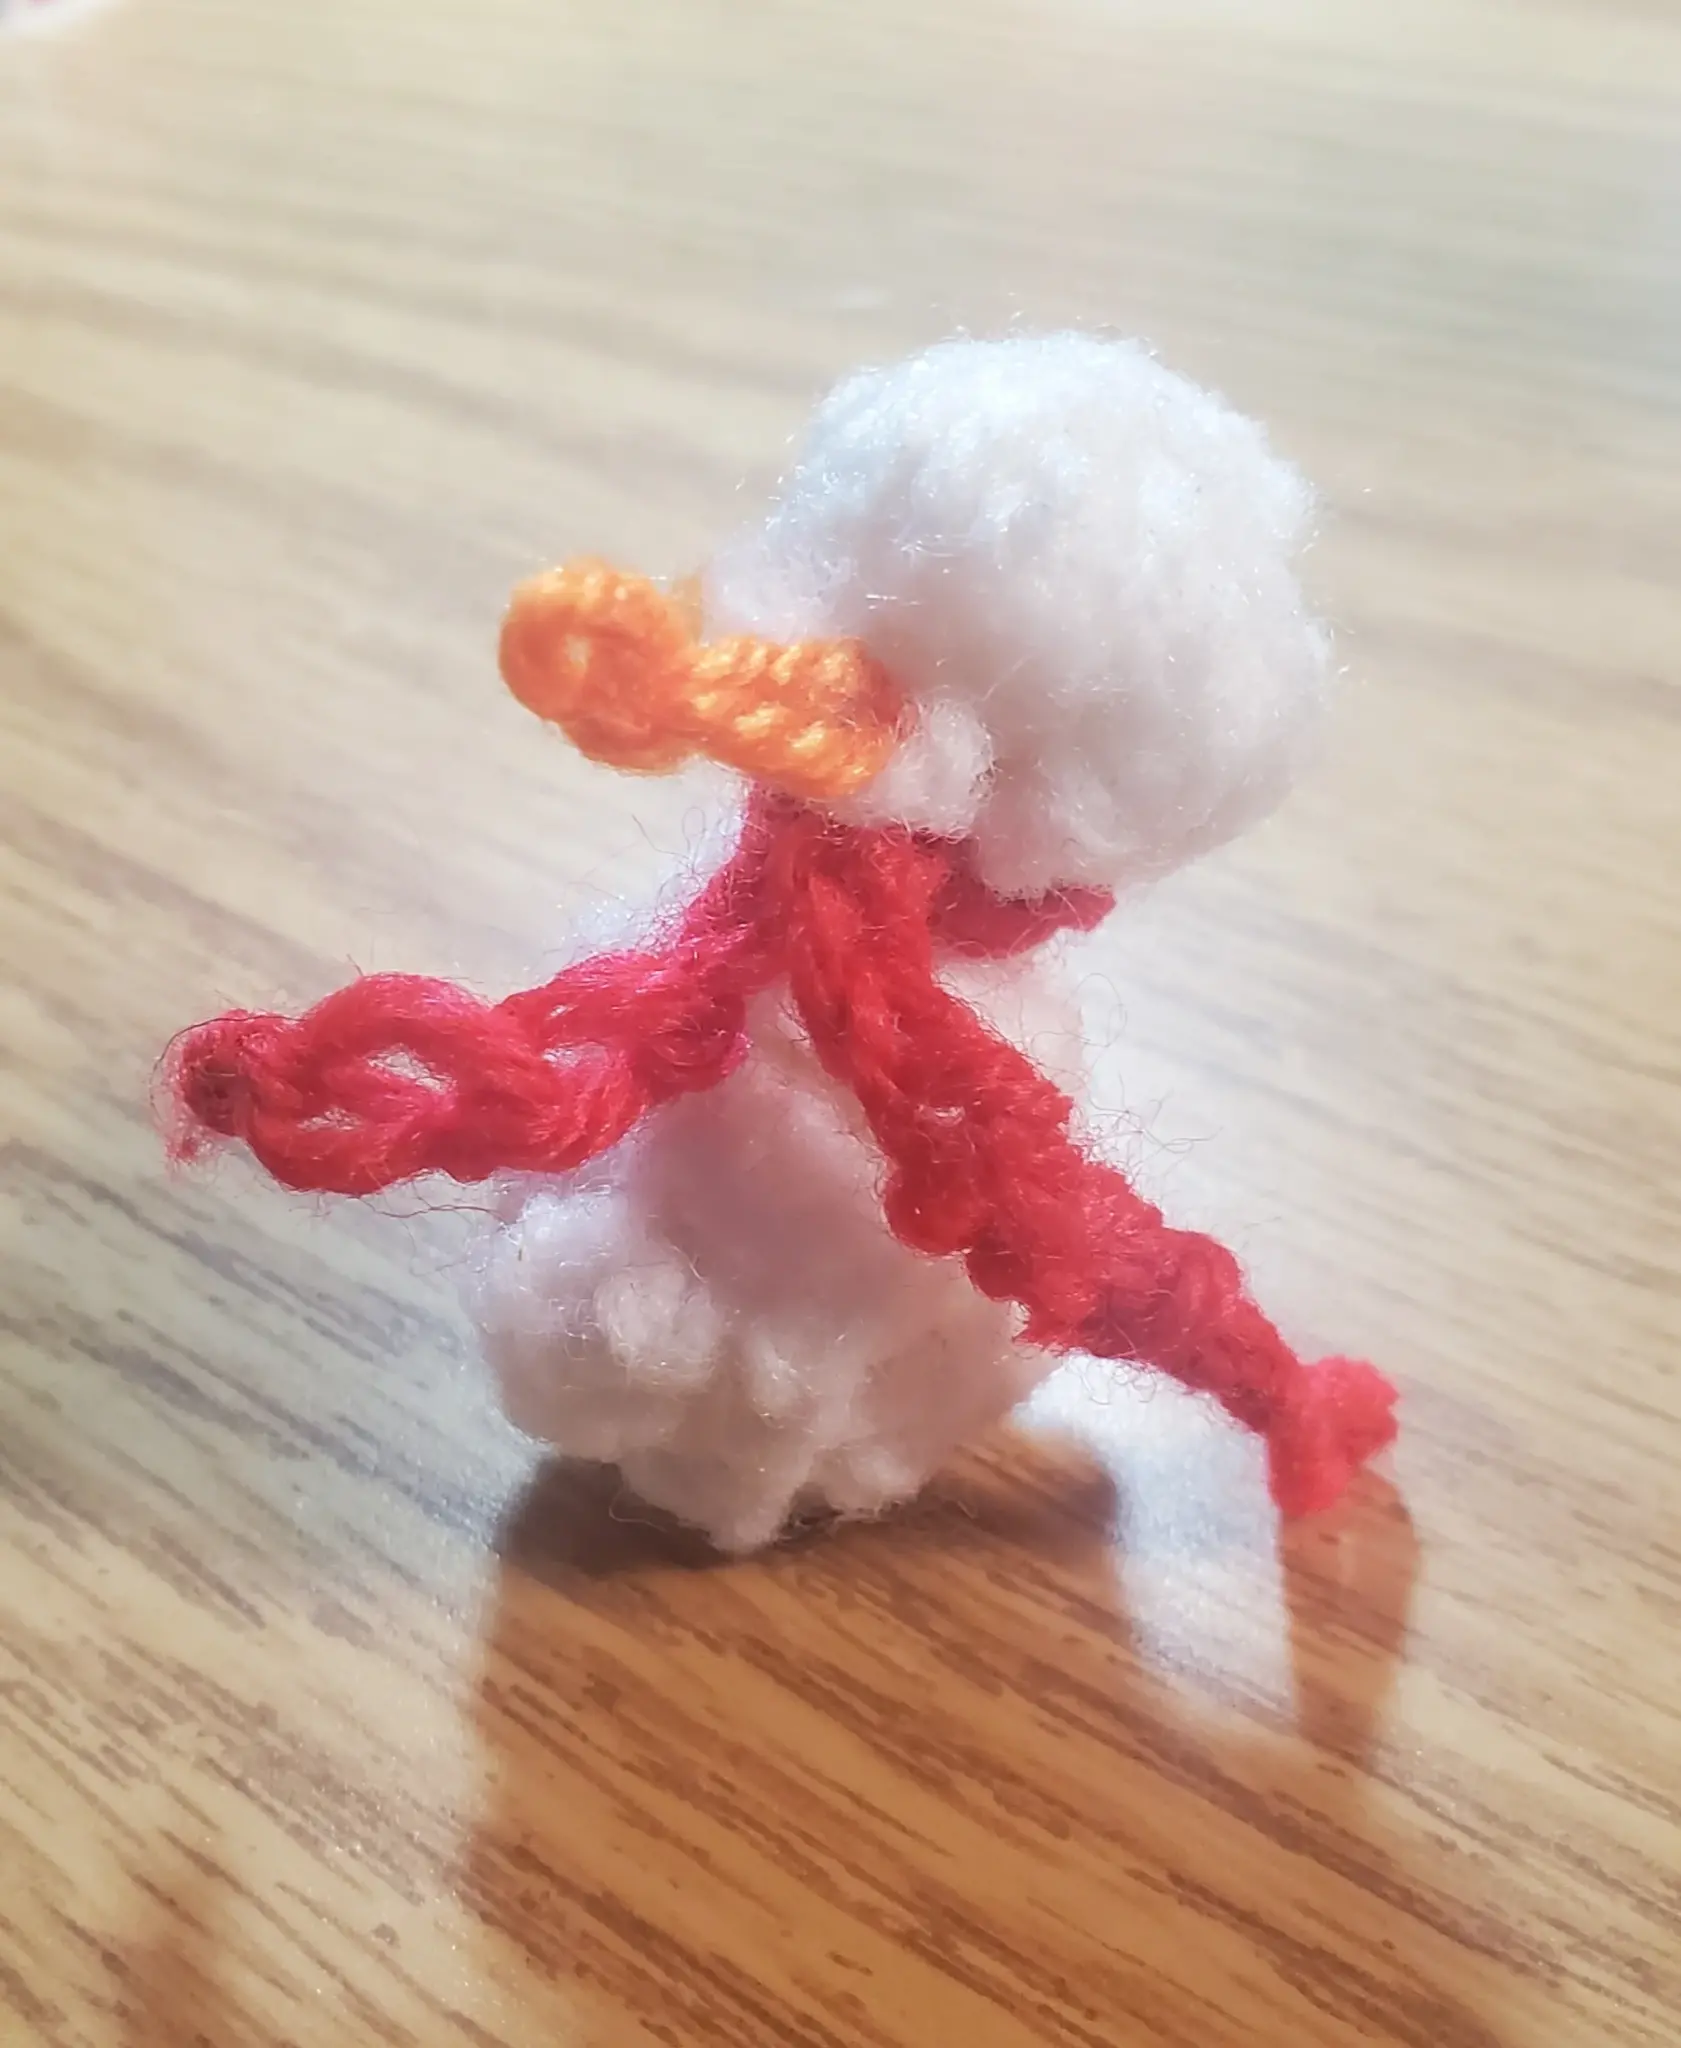 A crochet snowman.